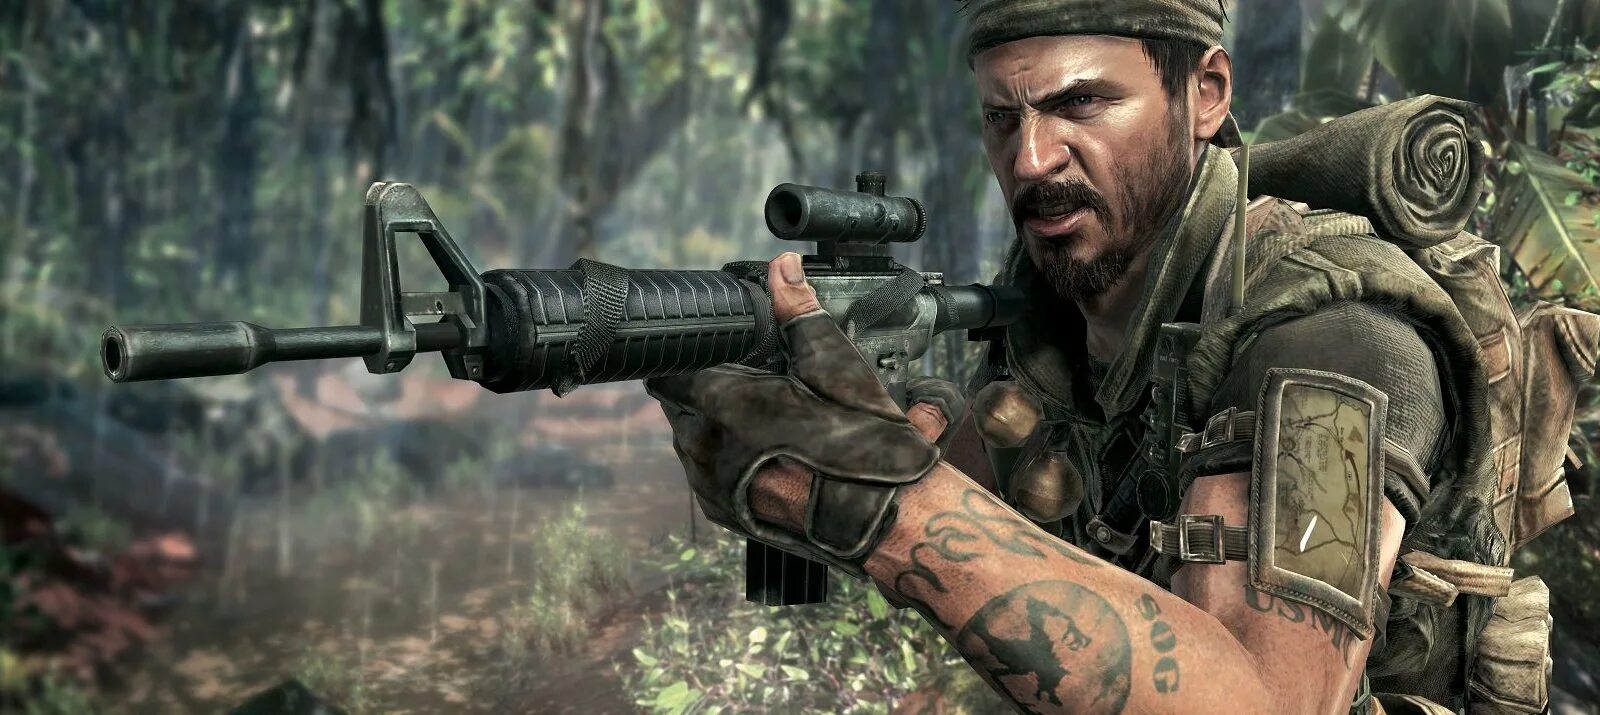 Вудс call of duty. Фрэнк Вудс Black ops. Фрэнк Вудс Call of Duty Black ops 2. Вудс Call of Duty Black ops 1. Вудс Call of Duty Black ops.